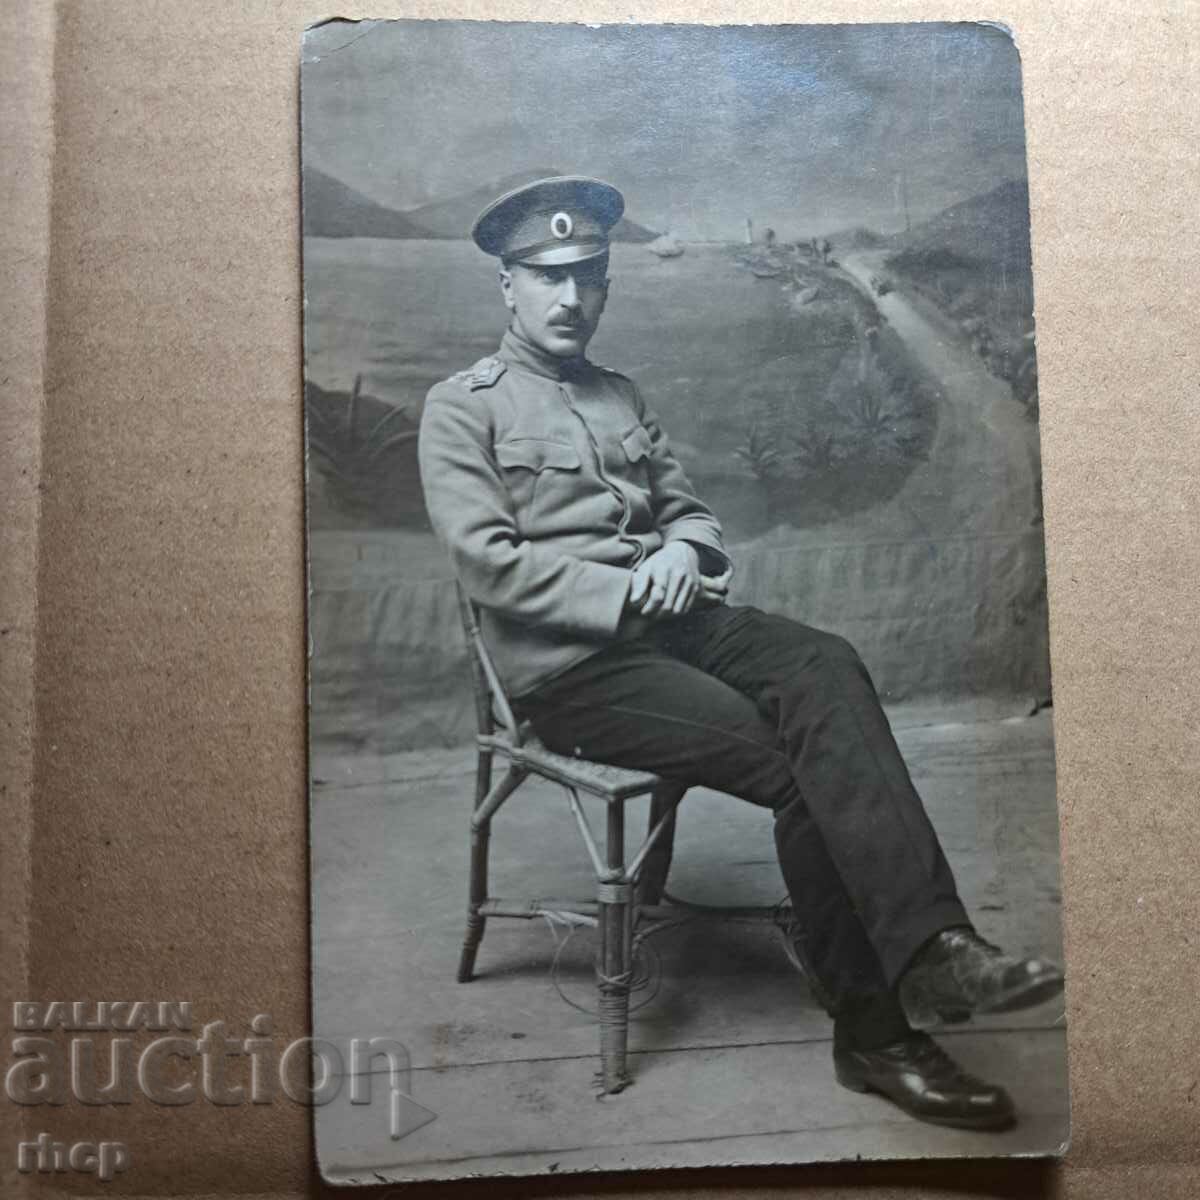 Drama 1918 Bulgarian officer 40 regiment First World War